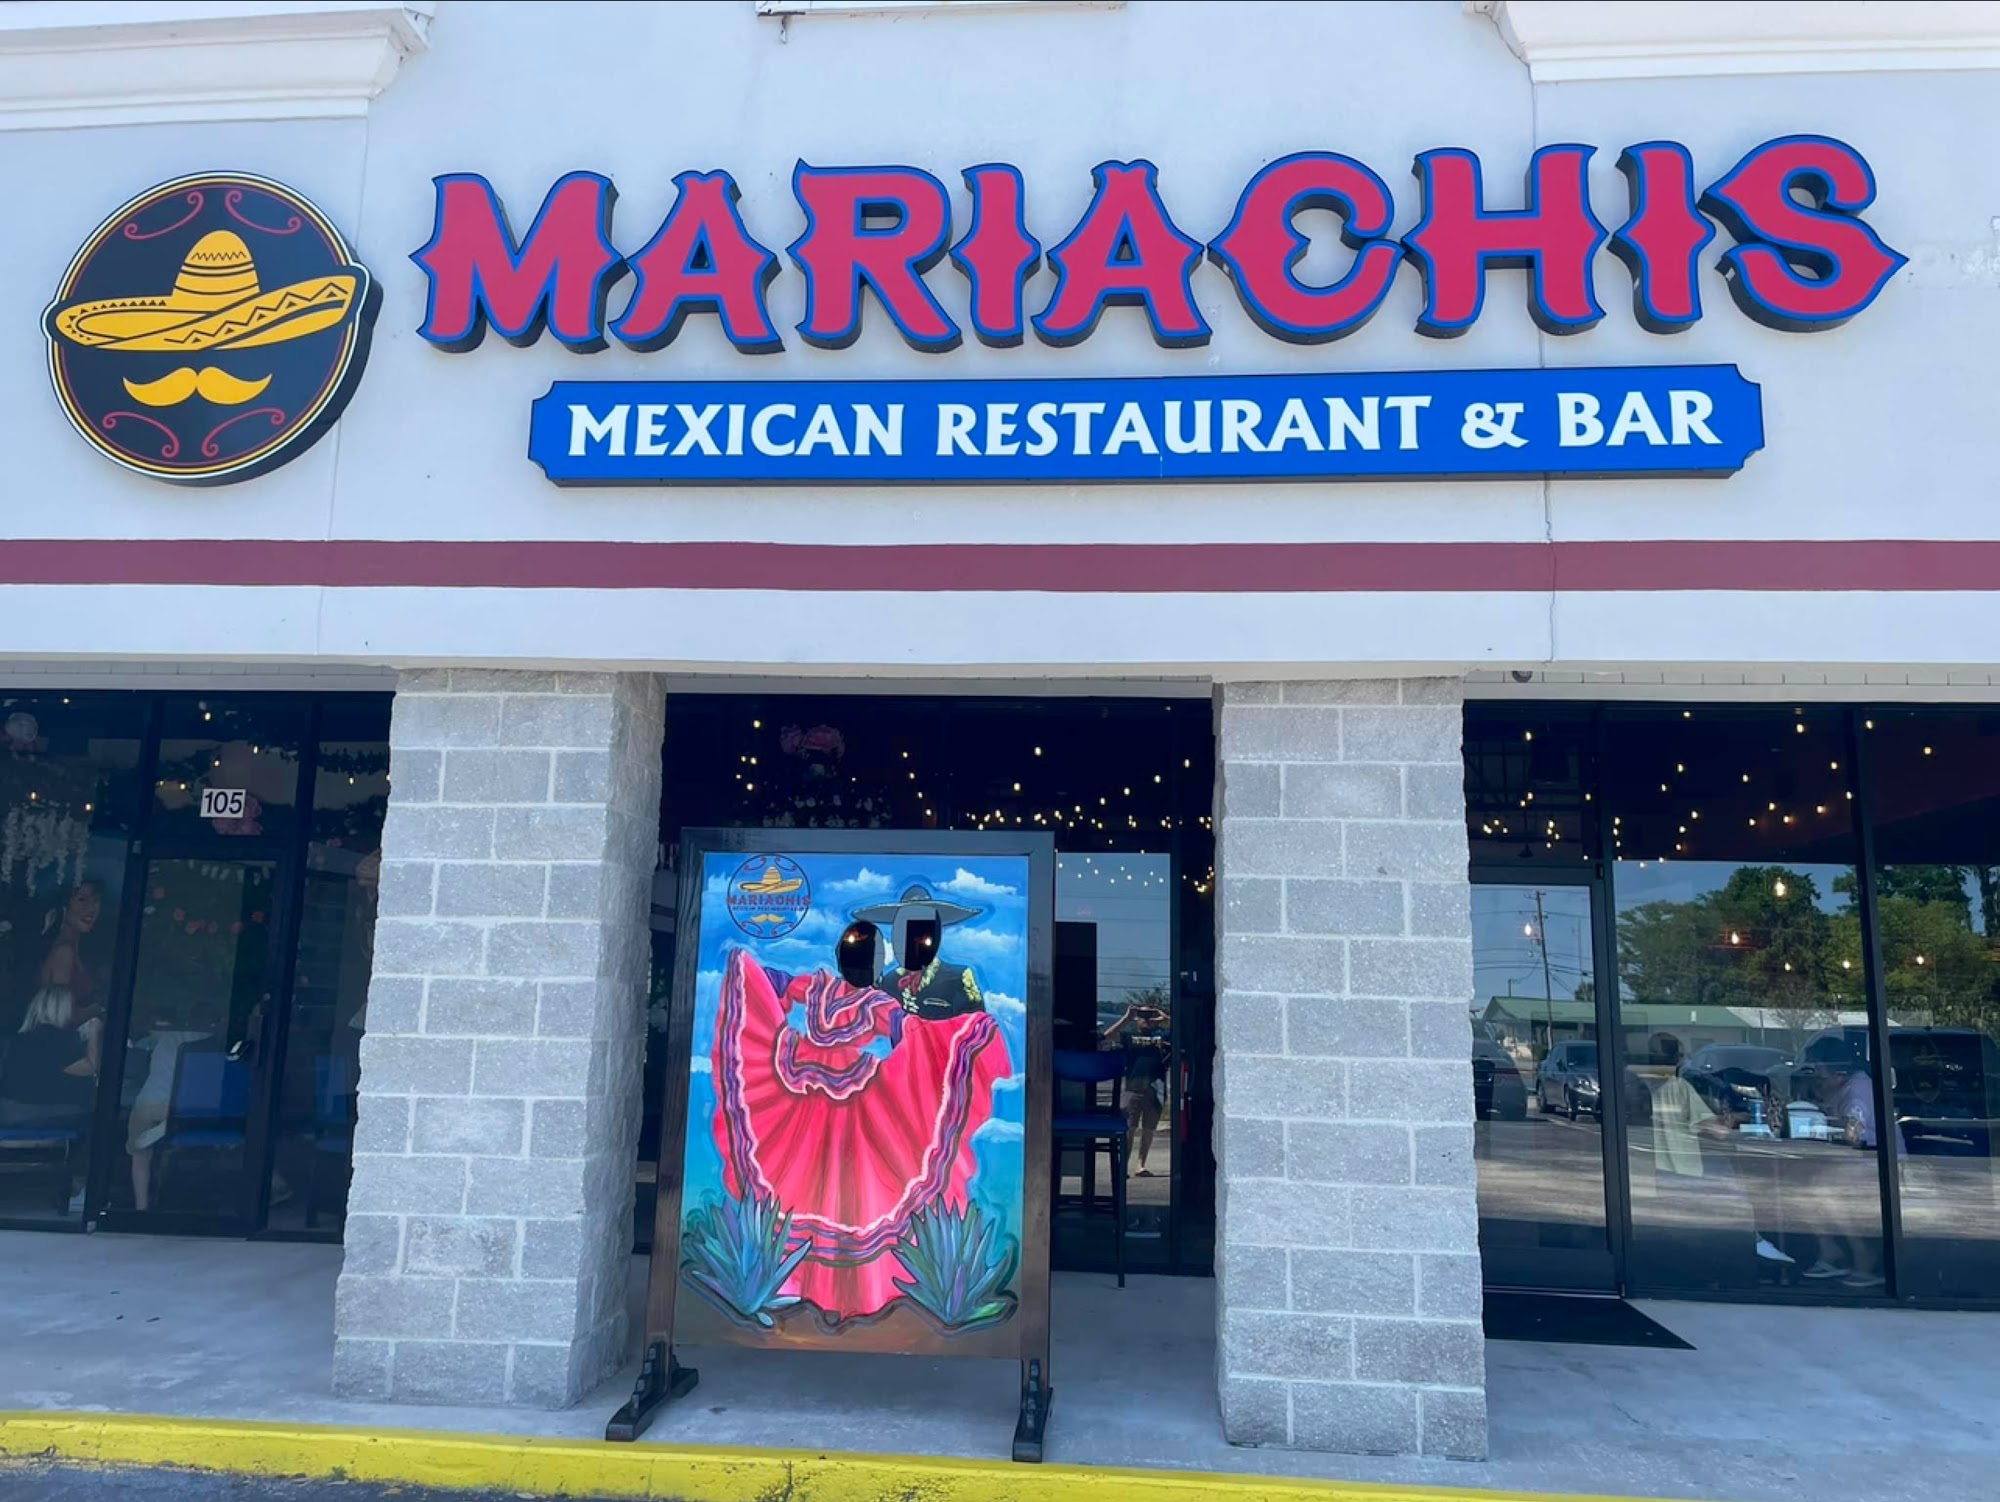 Mariachi’s Mexican Restaurant & Bar